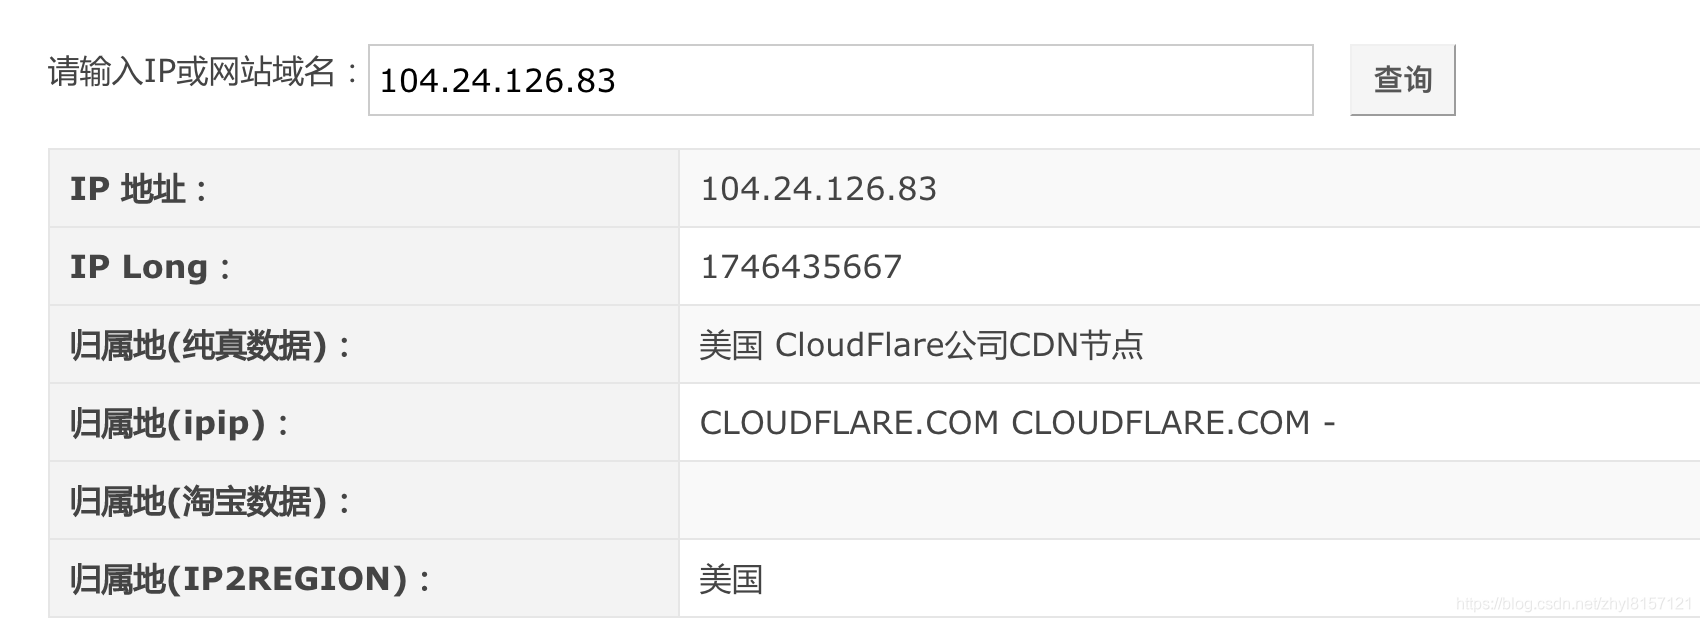 怎么样可以给你的网站套上Cloudflare